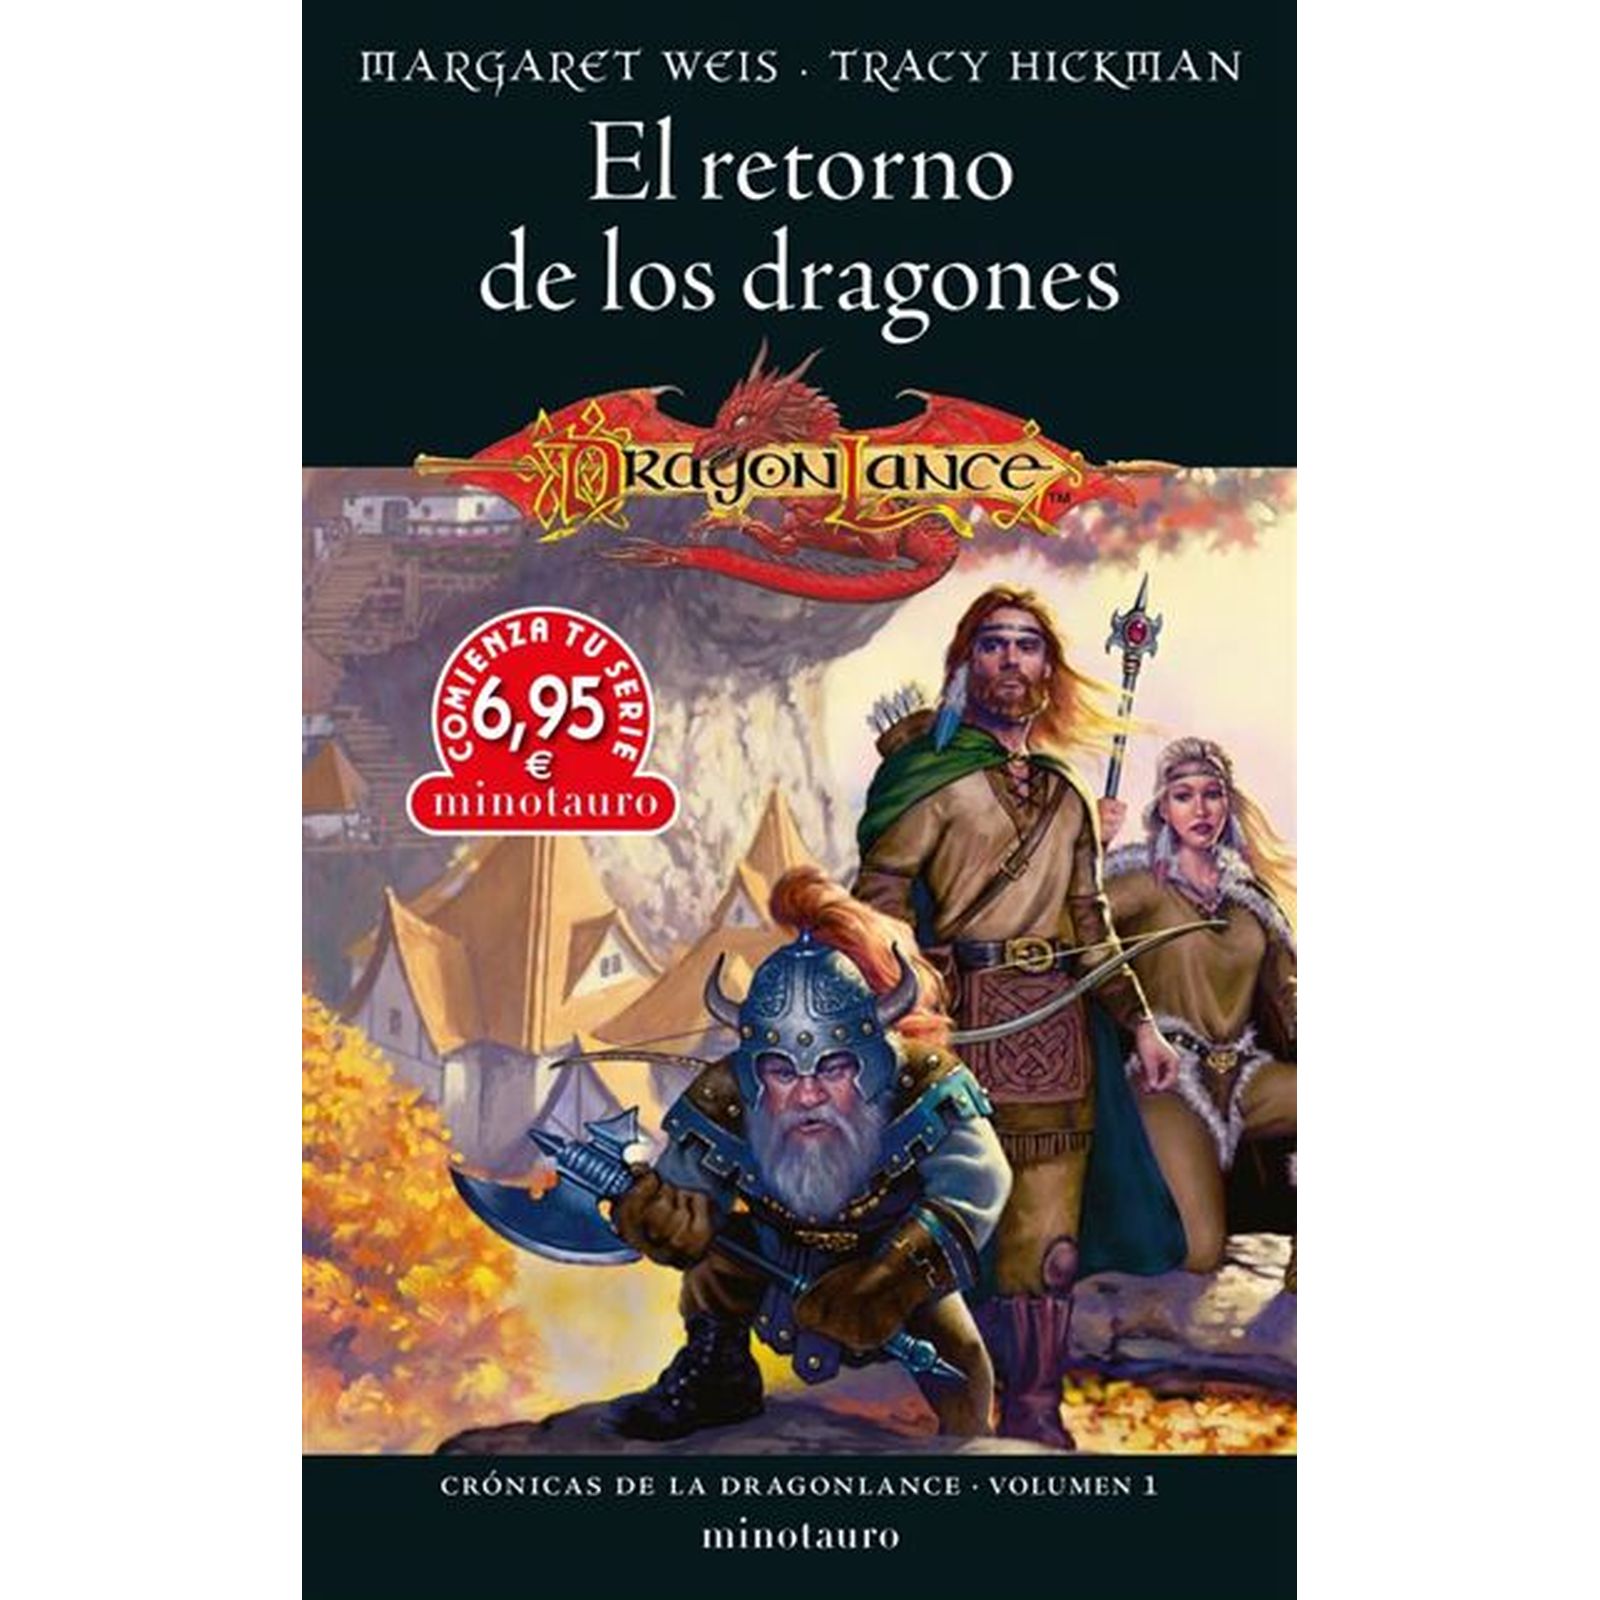 CTS CRONICAS DE LA DRAGONLANCE 01 EL RETORNO DE LOS DRAGONES